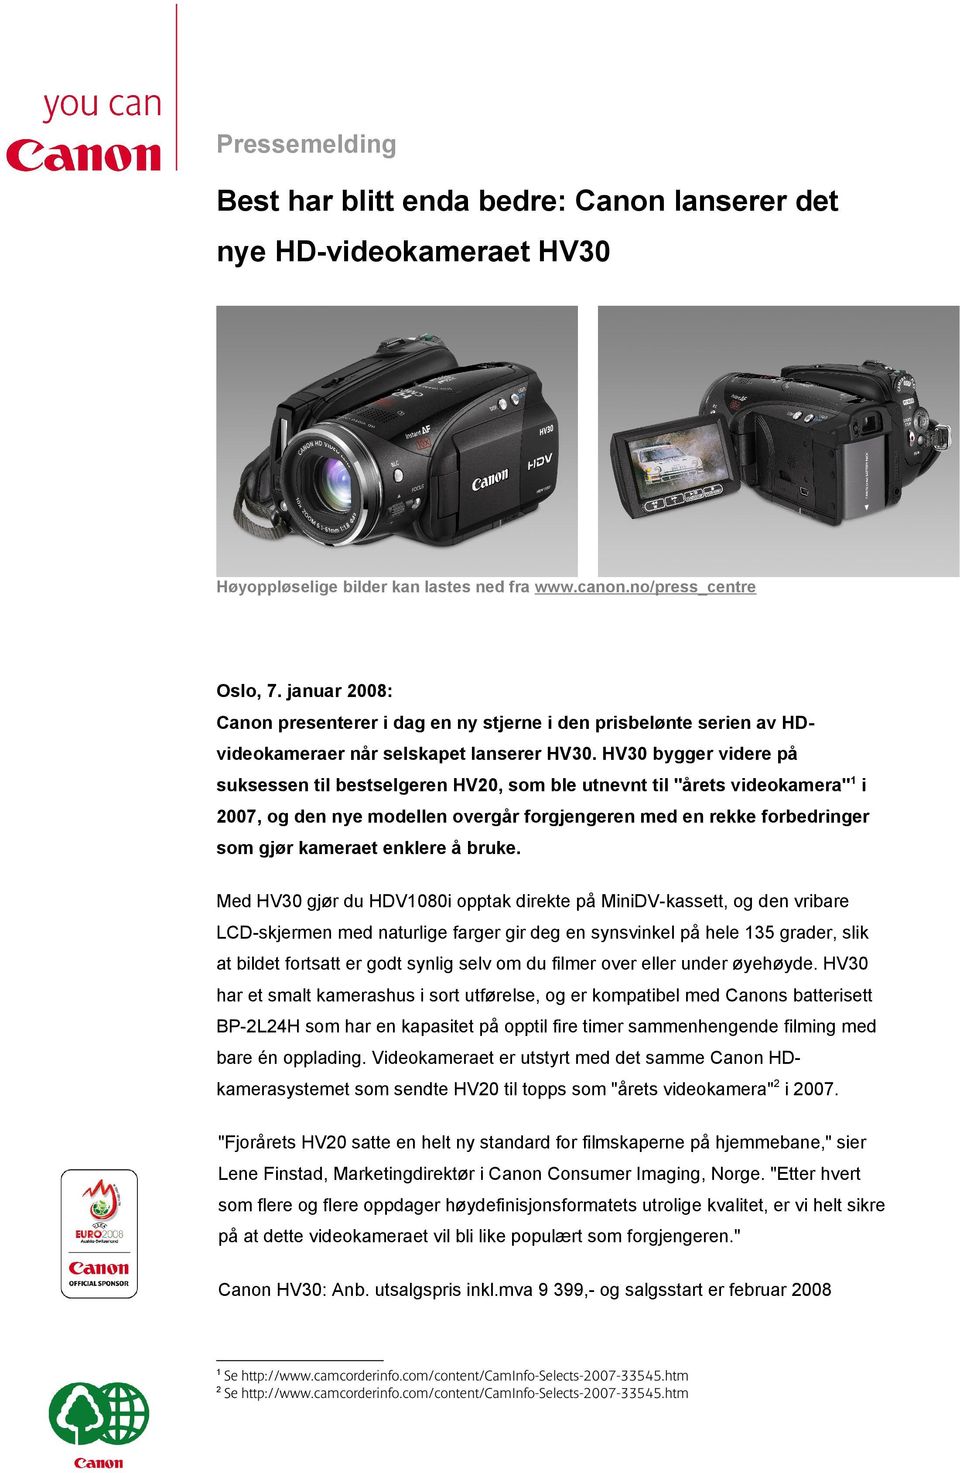 HV30 bygger videre på suksessen til bestselgeren HV20, som ble utnevnt til "årets videokamera"1 i 2007, og den nye modellen overgår forgjengeren med en rekke forbedringer som gjør kameraet enklere å